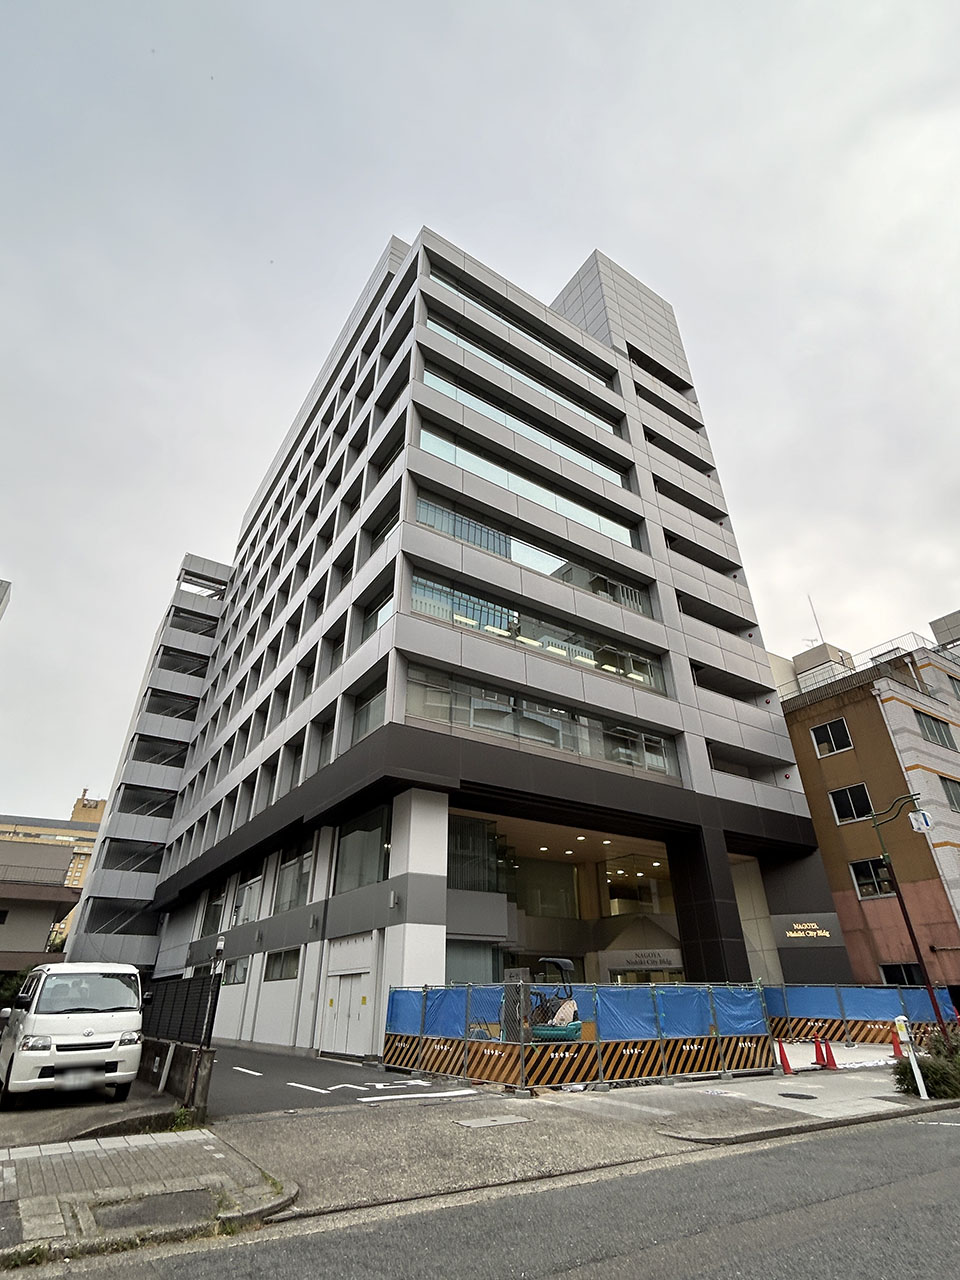 Nagoya Nishiki Citybuilding